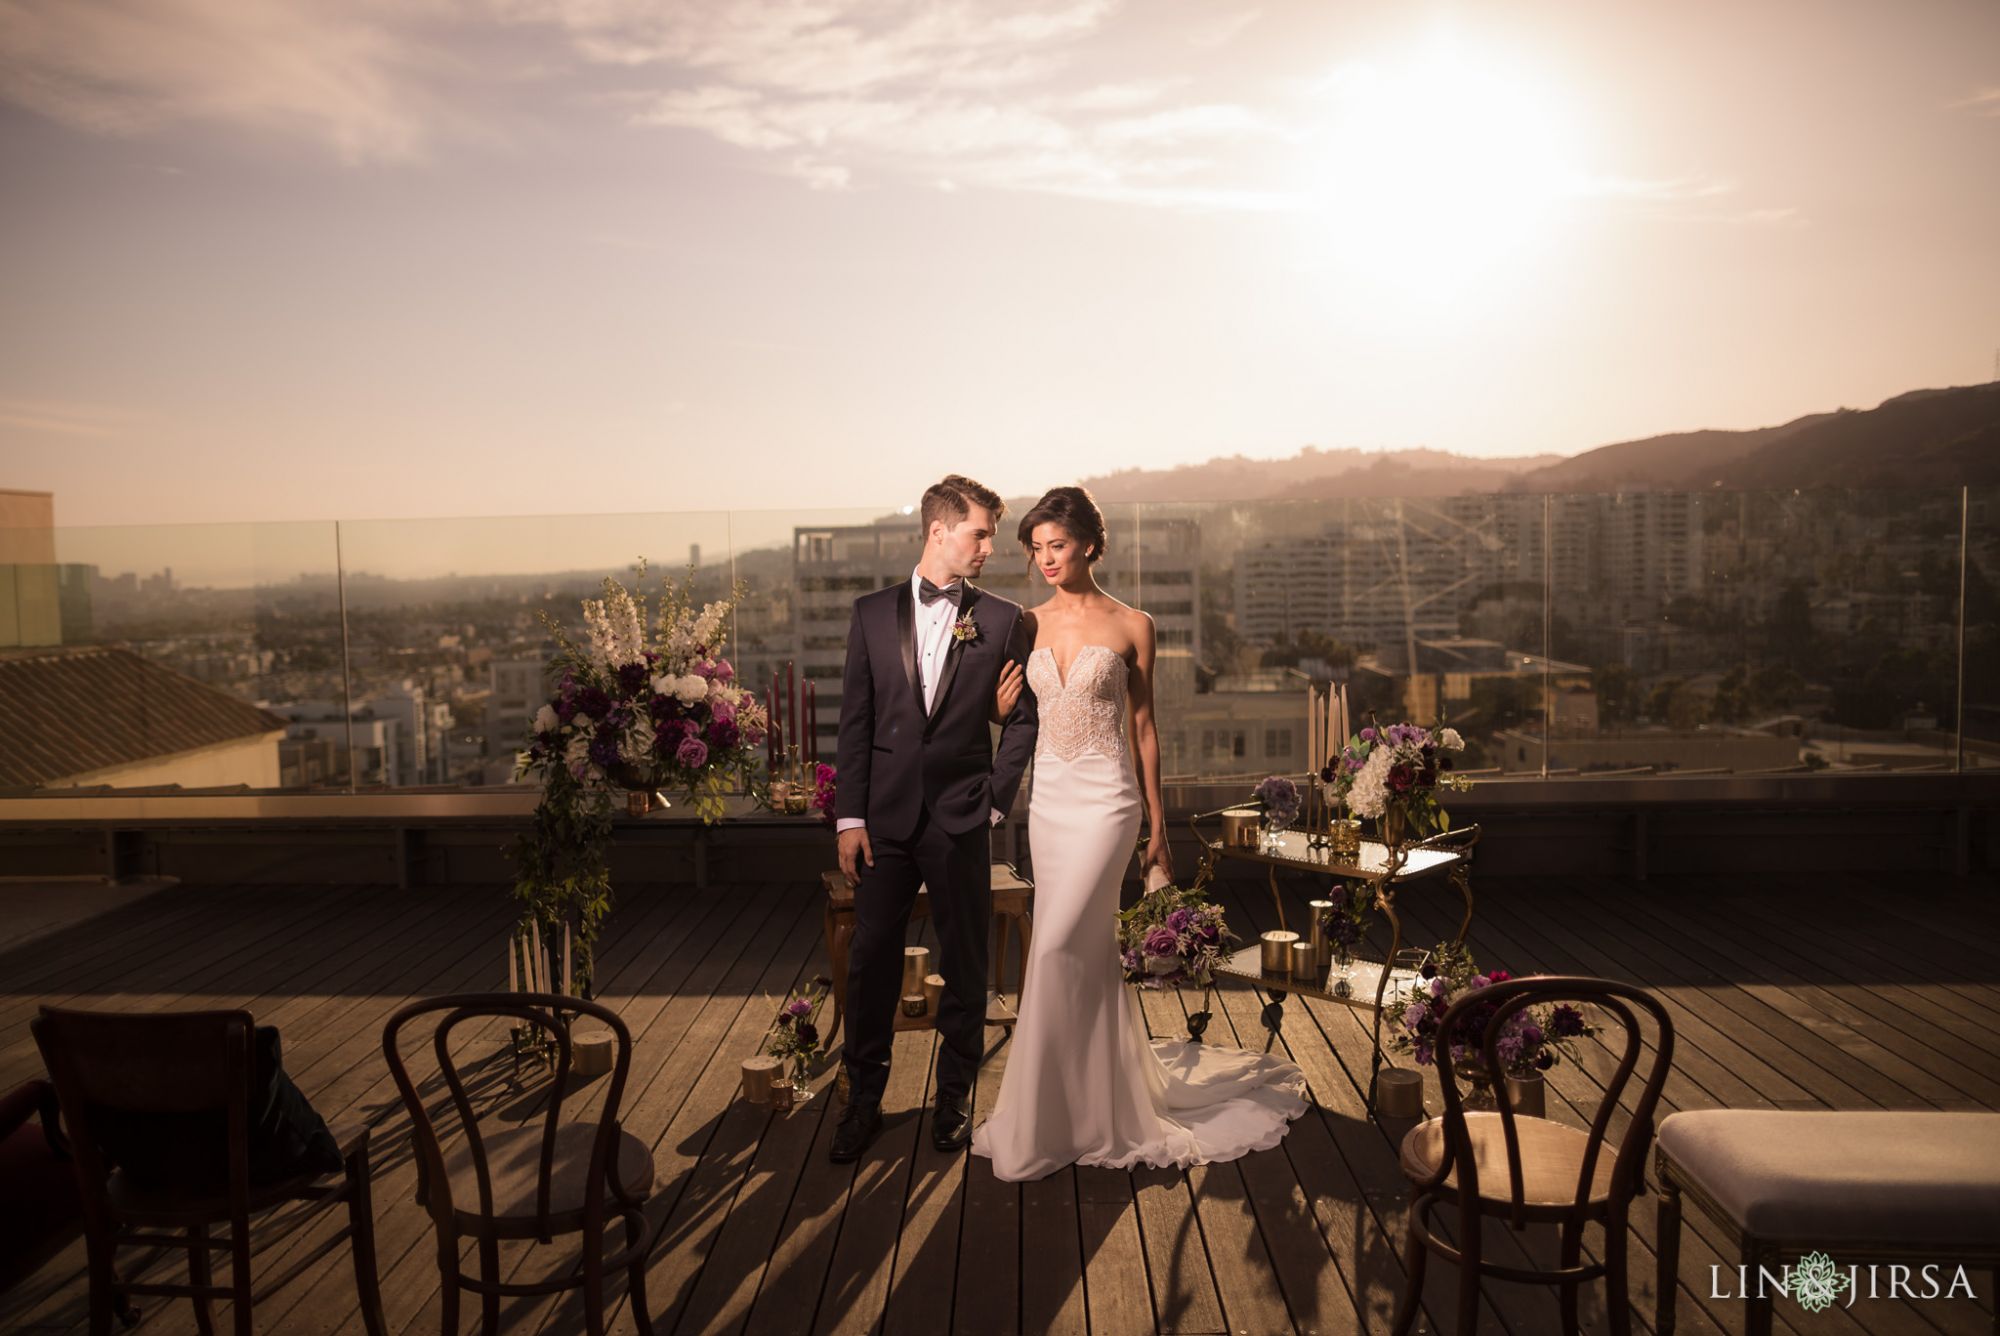 Roosevelt Hotel Hollywood Stylized Photography couple epic wide